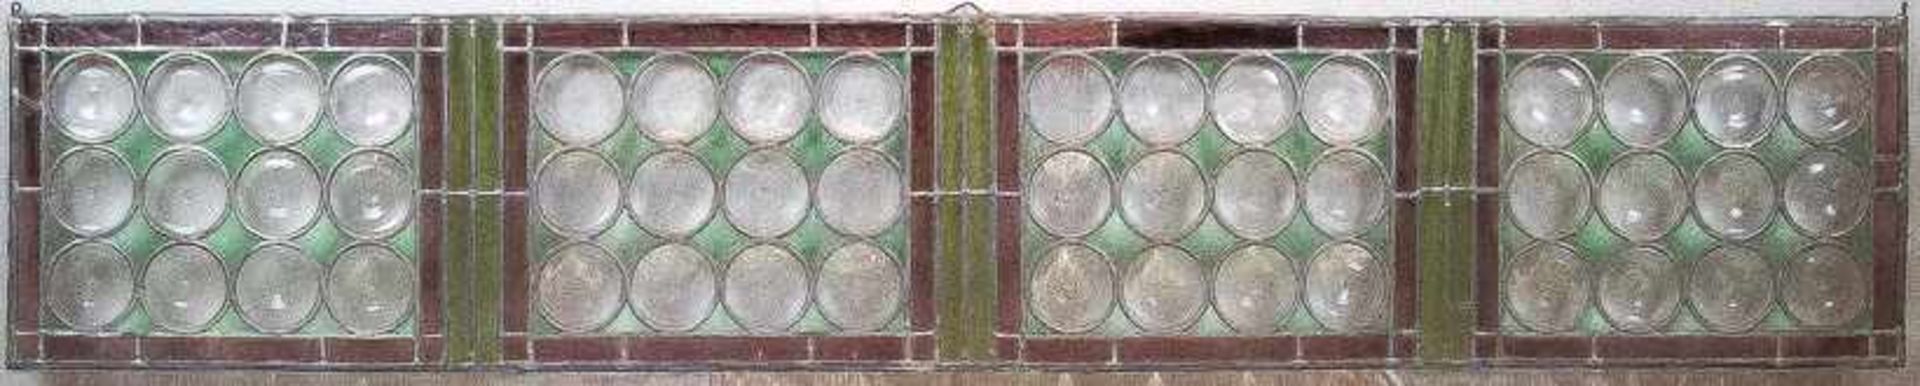 Vierteilige BleiverglasungAneinandergereihte Felder mit Butzenscheiben zwischen waldgrünem Glas bzw.